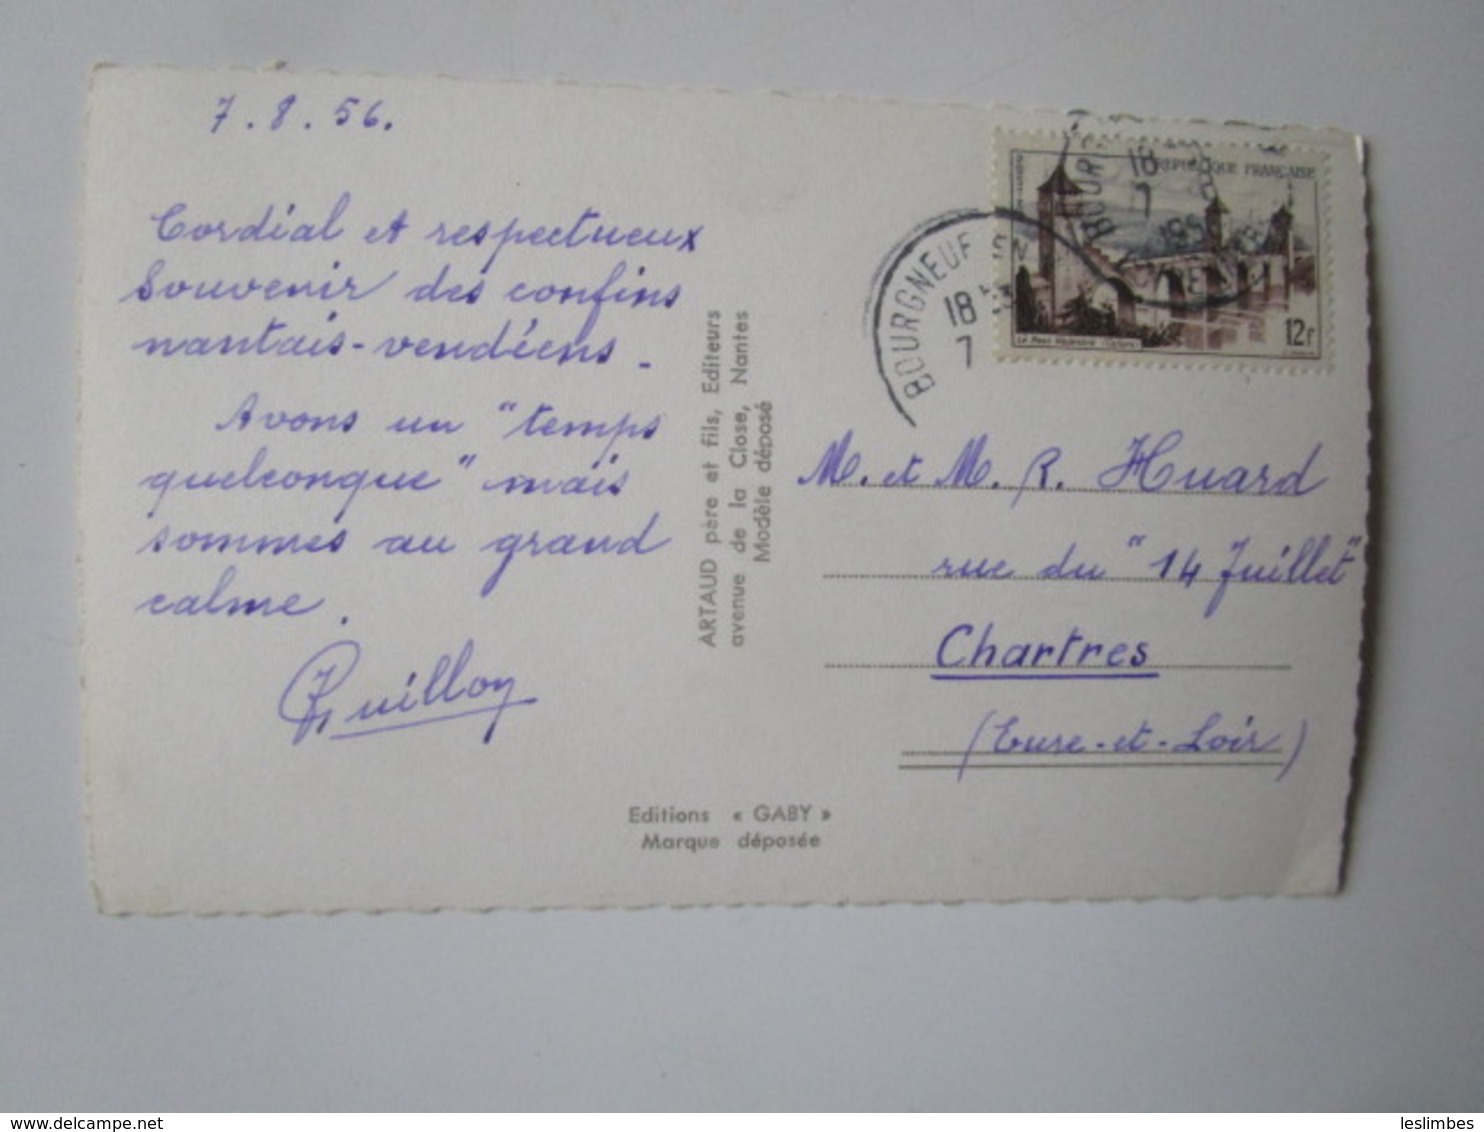 Bourgneuf En Retz. Les Marais Salants. Le Port. Le Sacre Coeur. La Pointe Aux Sables. Gaby Postmarked 1956 - Bourgneuf-en-Retz